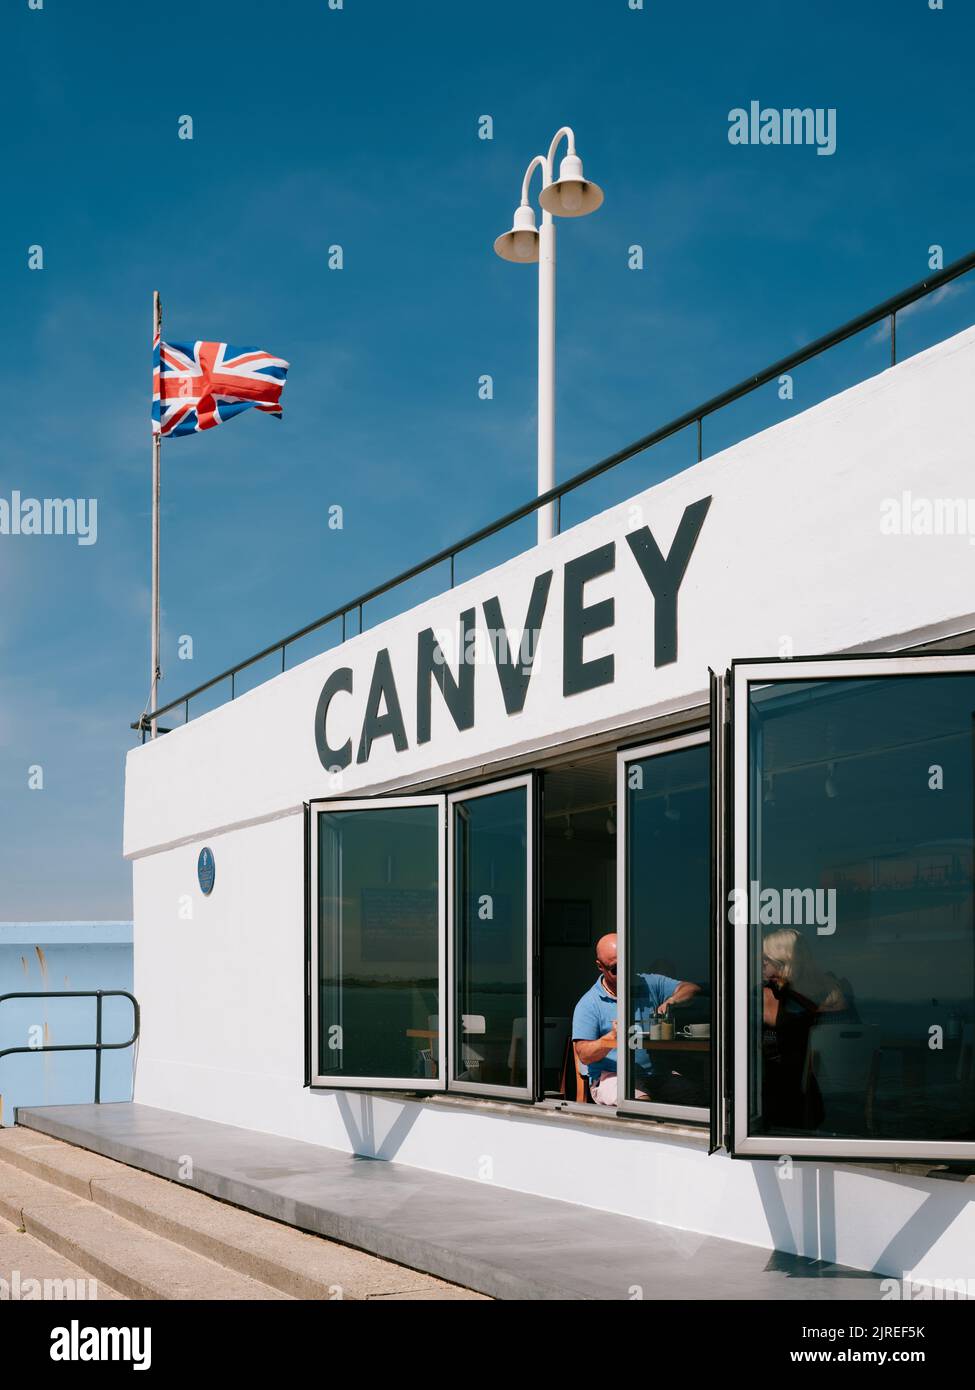 L'architecture moderne en béton de bord de mer du restaurant Labworth Cafe à Canvey Island, l'estuaire de la Tamise, Essex, Angleterre, Royaume-Uni - Essex Banque D'Images